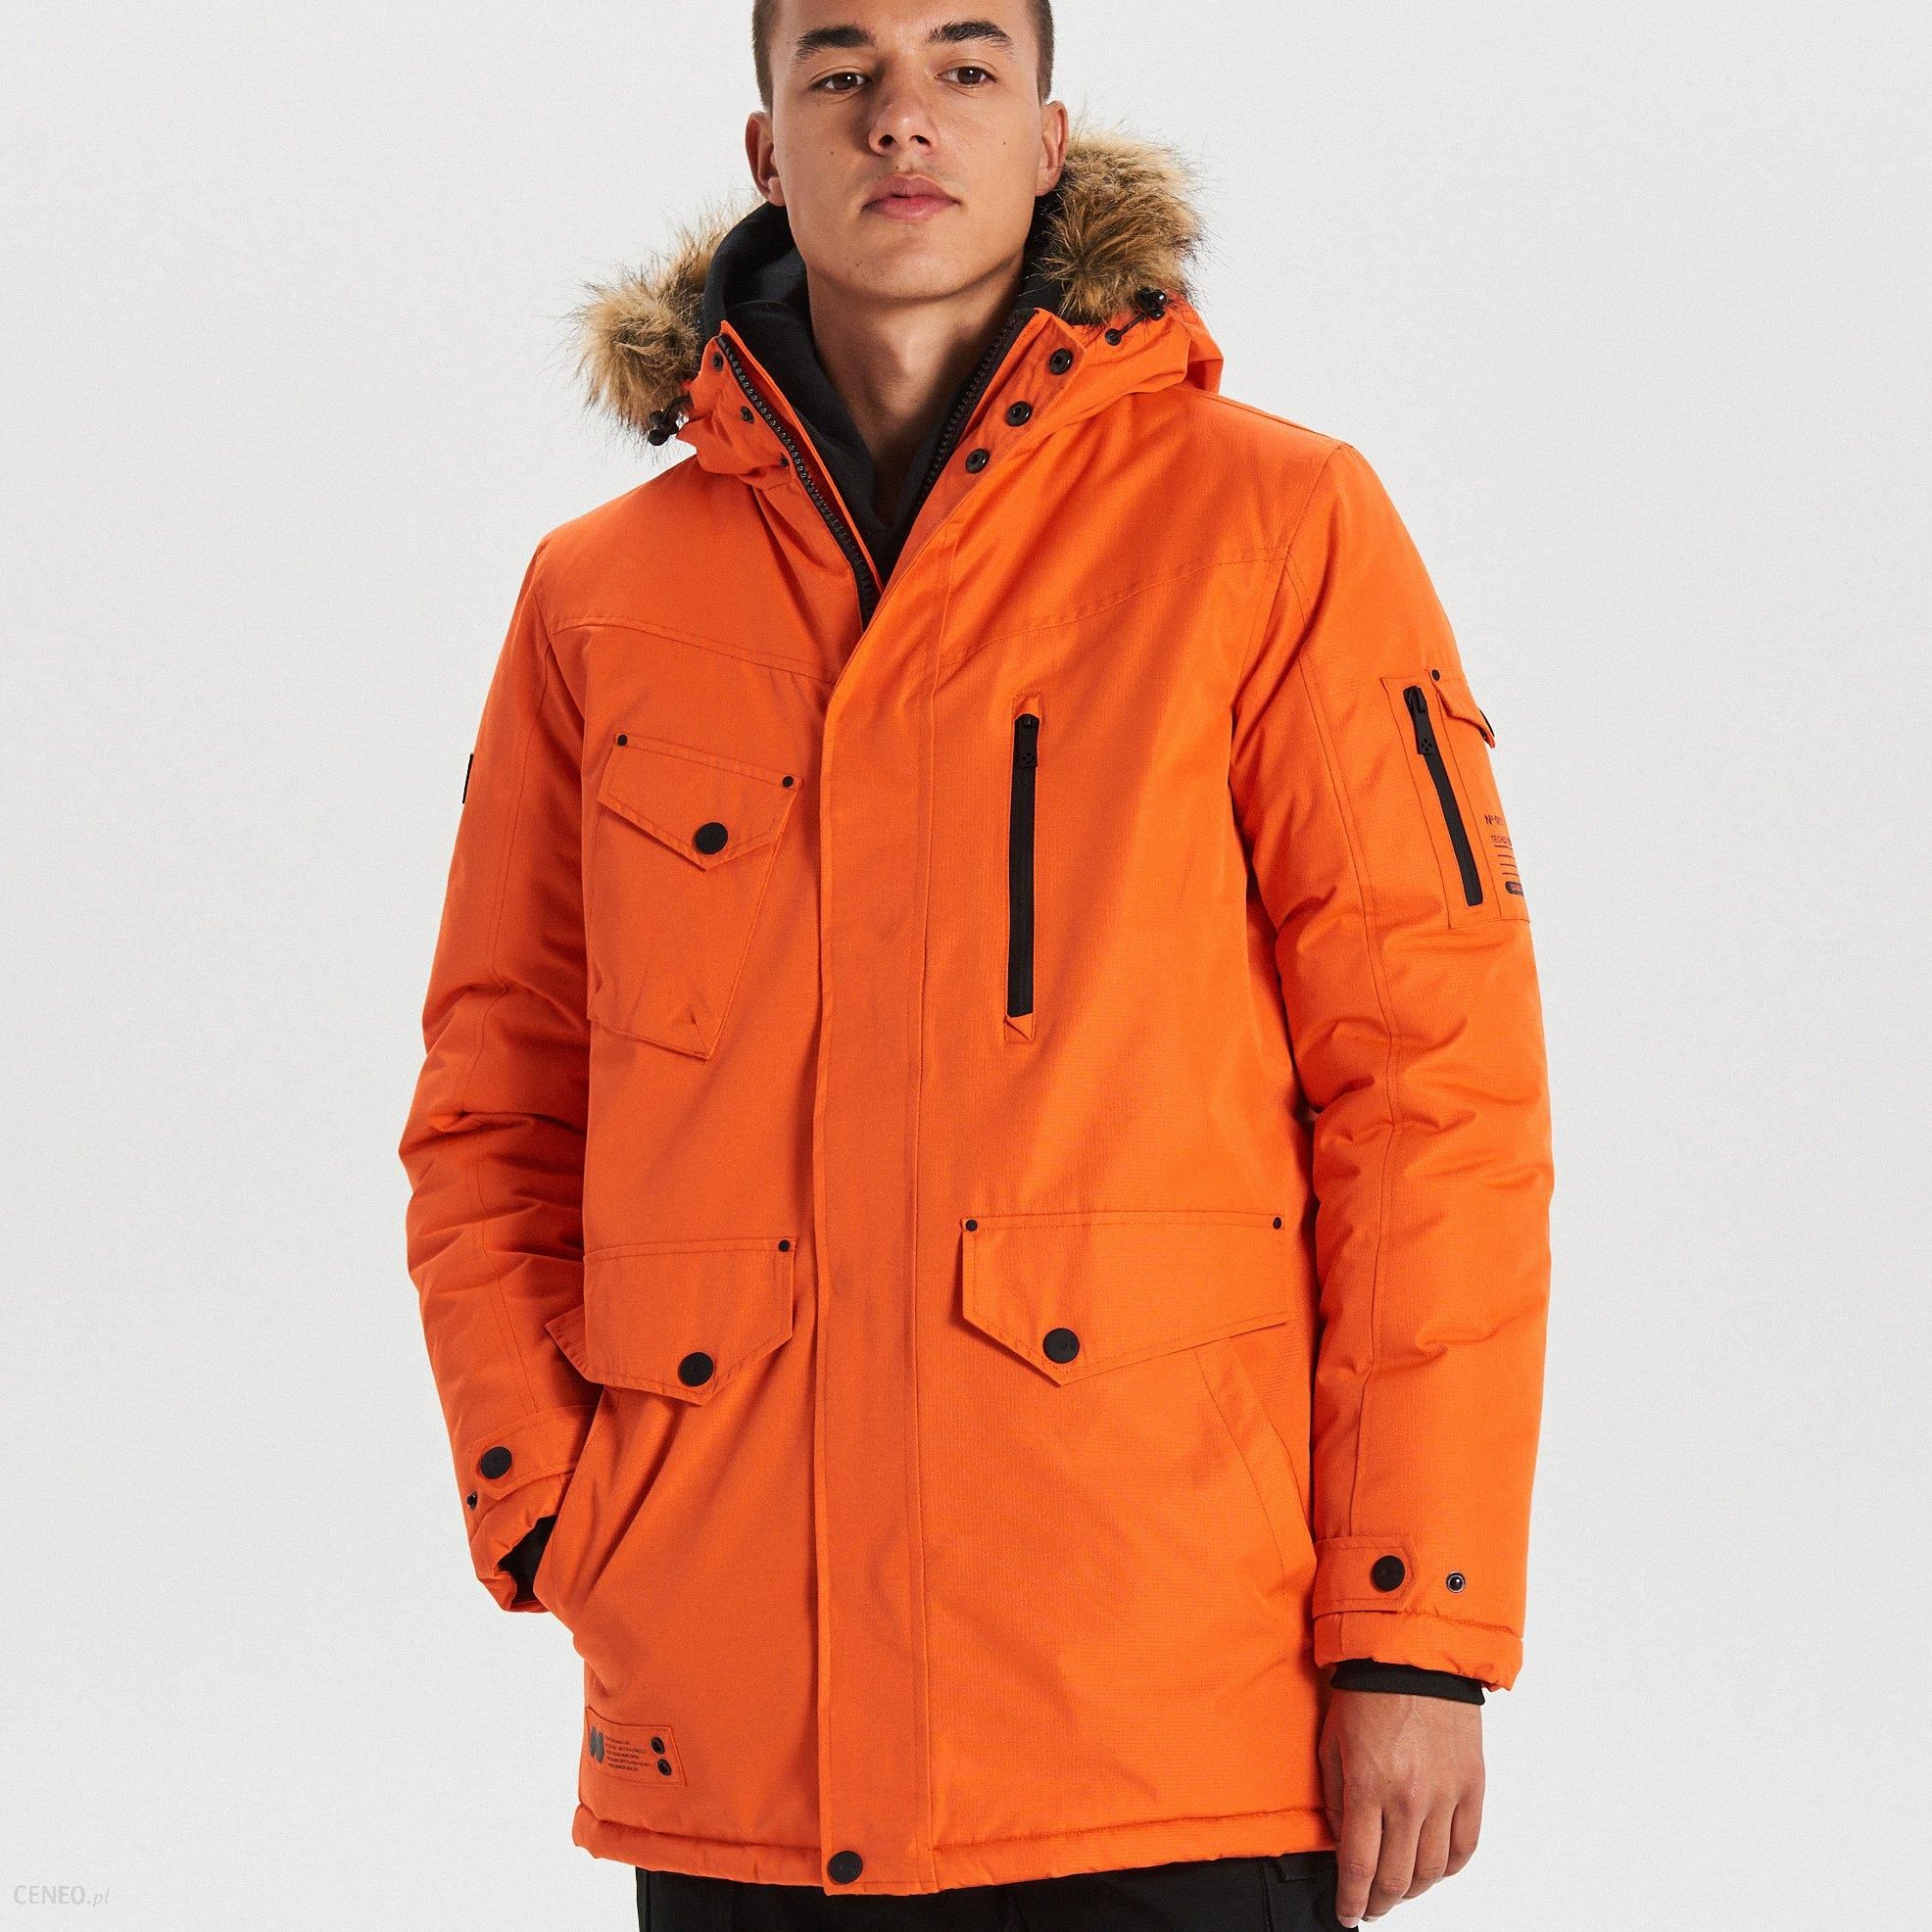 Куртка cropp мужская. Cropp мужская куртка оранжевая. Cropp парка мужская зимняя. Куртка Cropp женская оранжевая. Cropp одежда мужская парка.